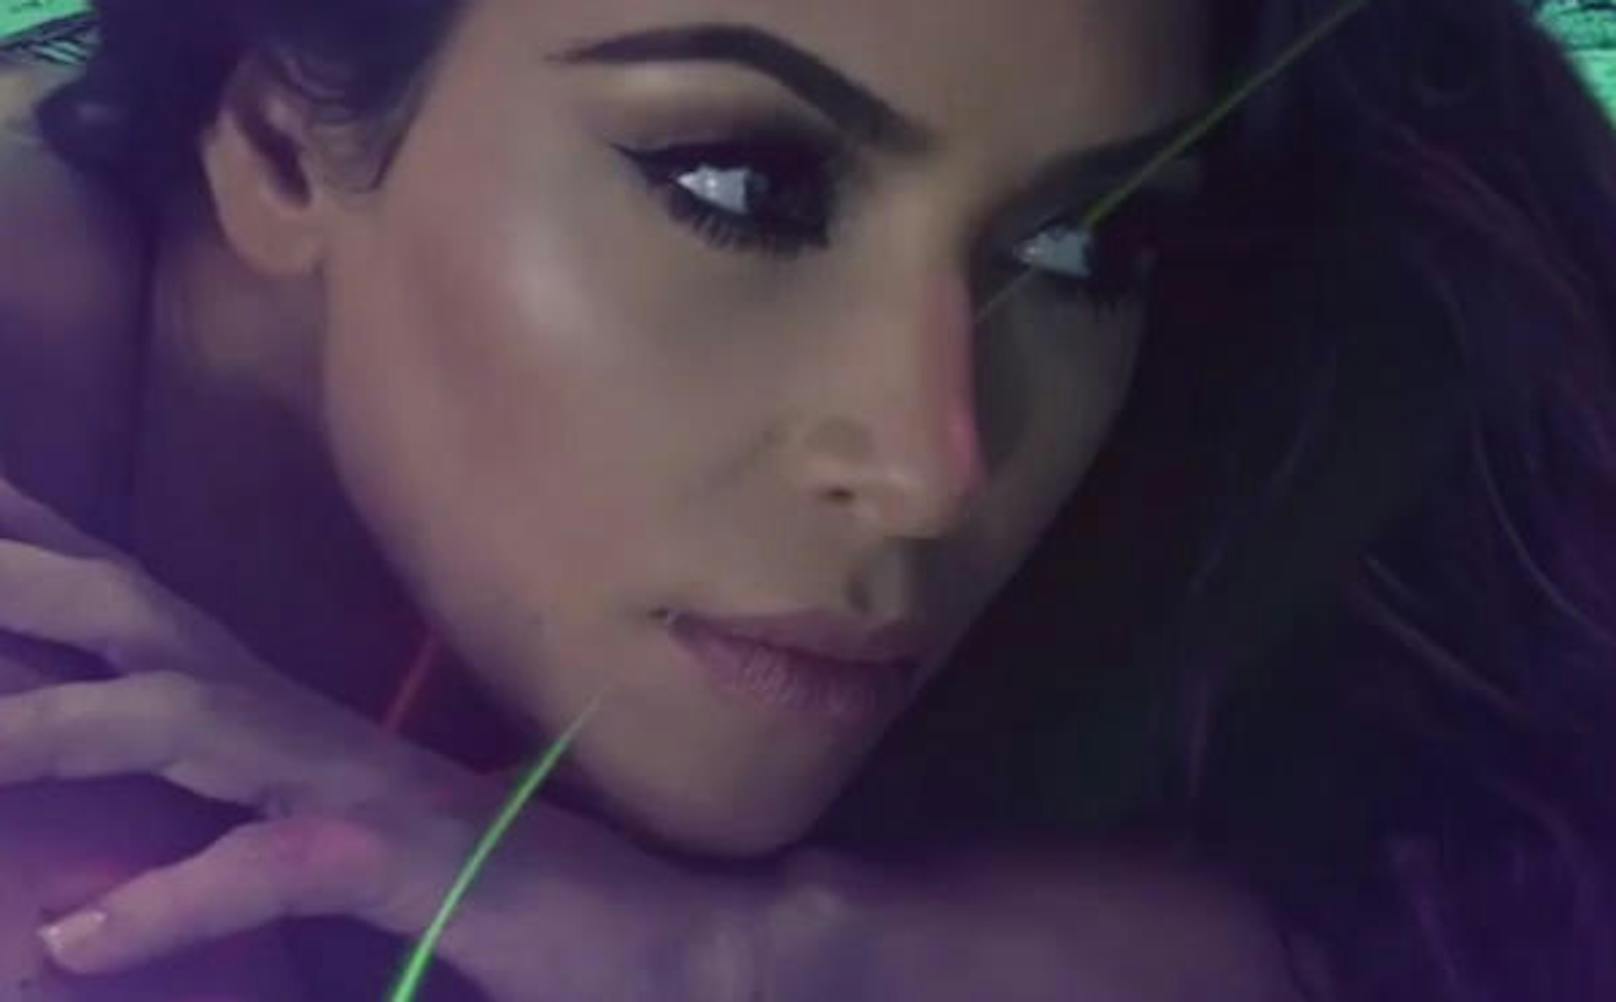 Kim Kardashian ist für ihre geschwungenen Augenbrauen bekannt. Sie hat den Look perfektioniert und zahlreiche YouTube Tutorials drehen sich darum den Look nachzuschminken.